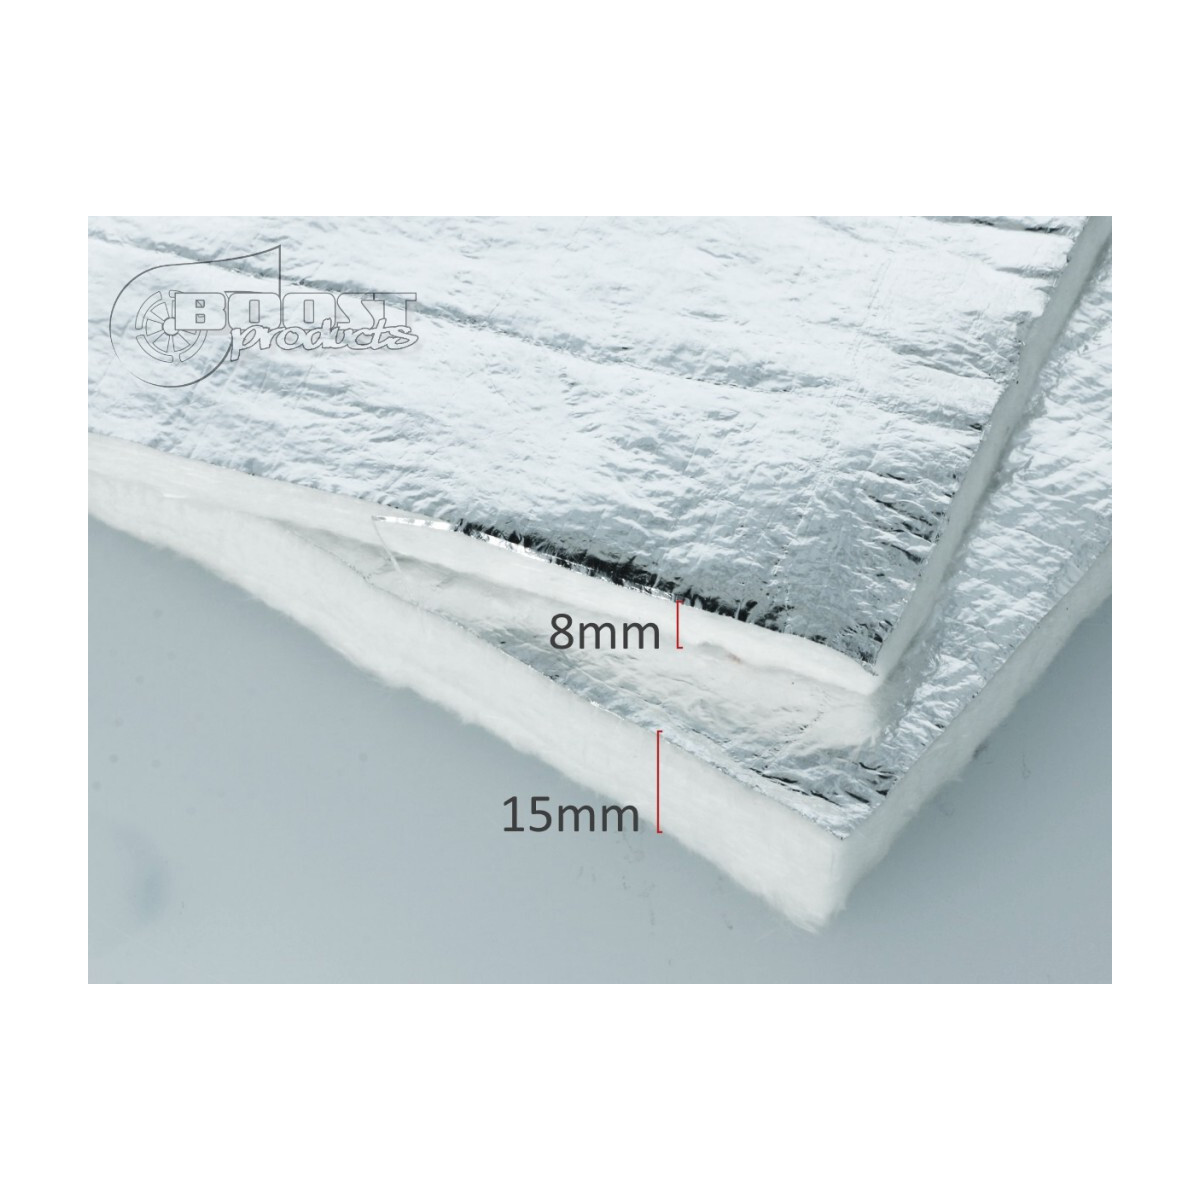 BOOST products Hitzeschutz - Glasfasermatte mit Alubeschichtung 15mm -30x60cm